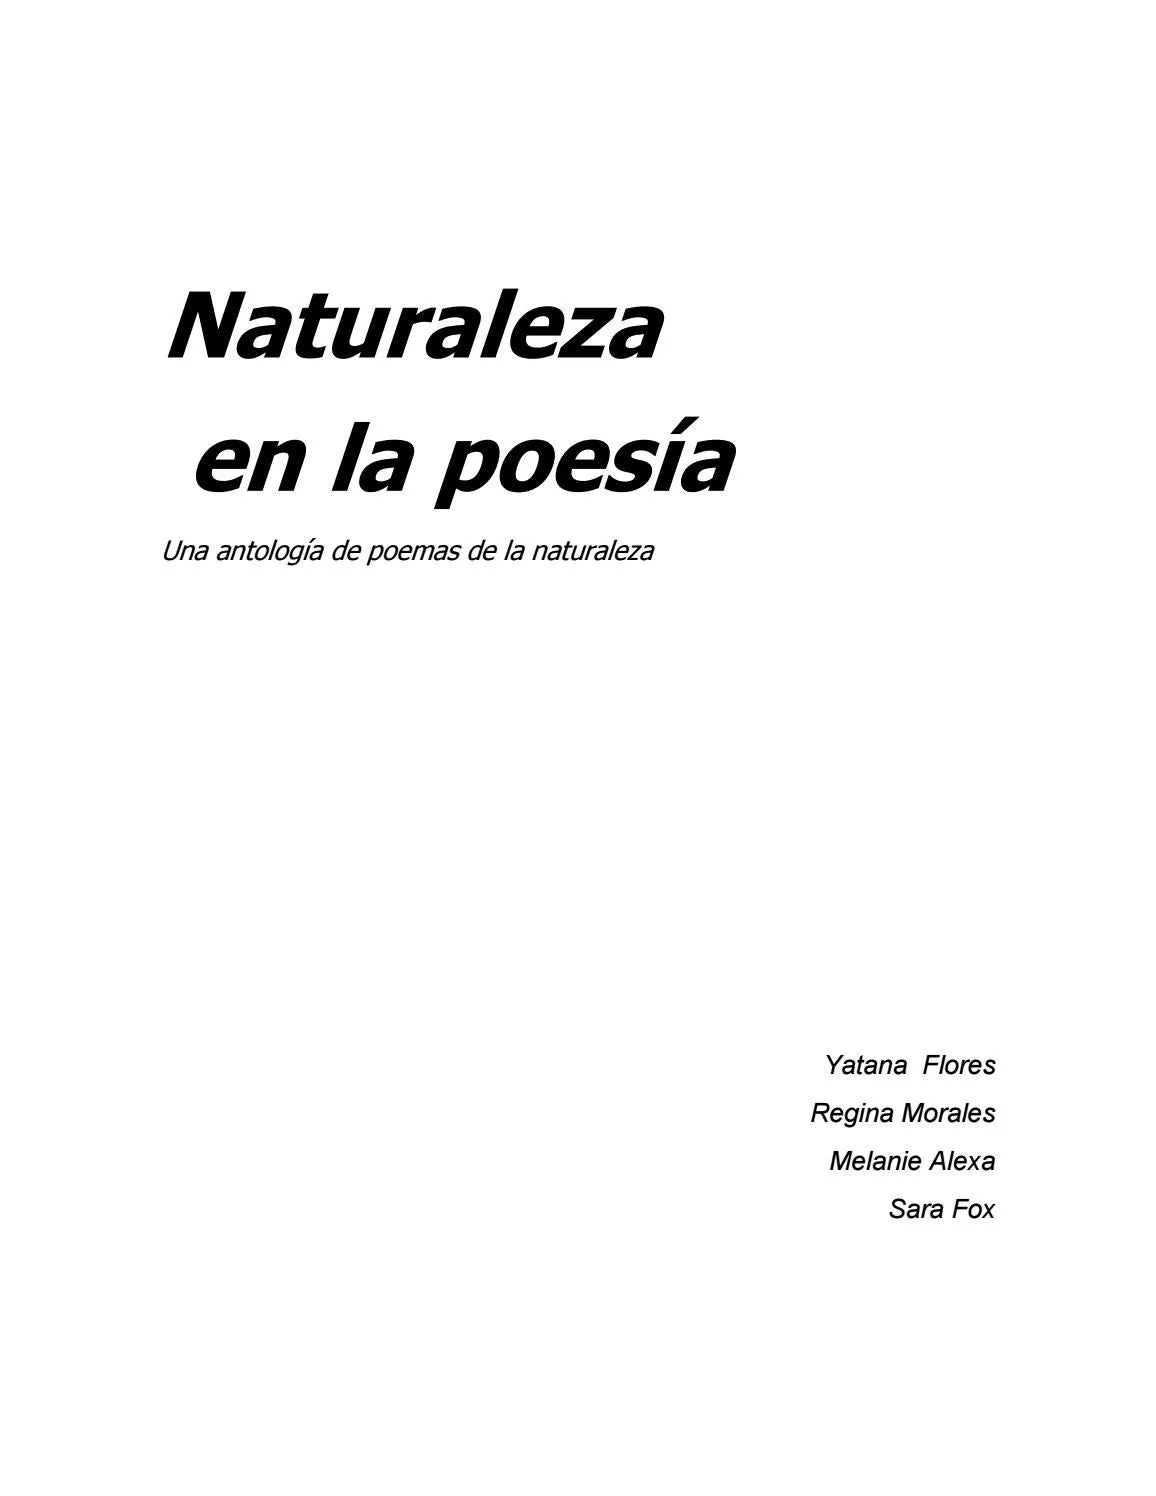 Naturaleza en la poesía. Una antología de poemas sobre la naturaleza by  Elenor Arrington - Issuu